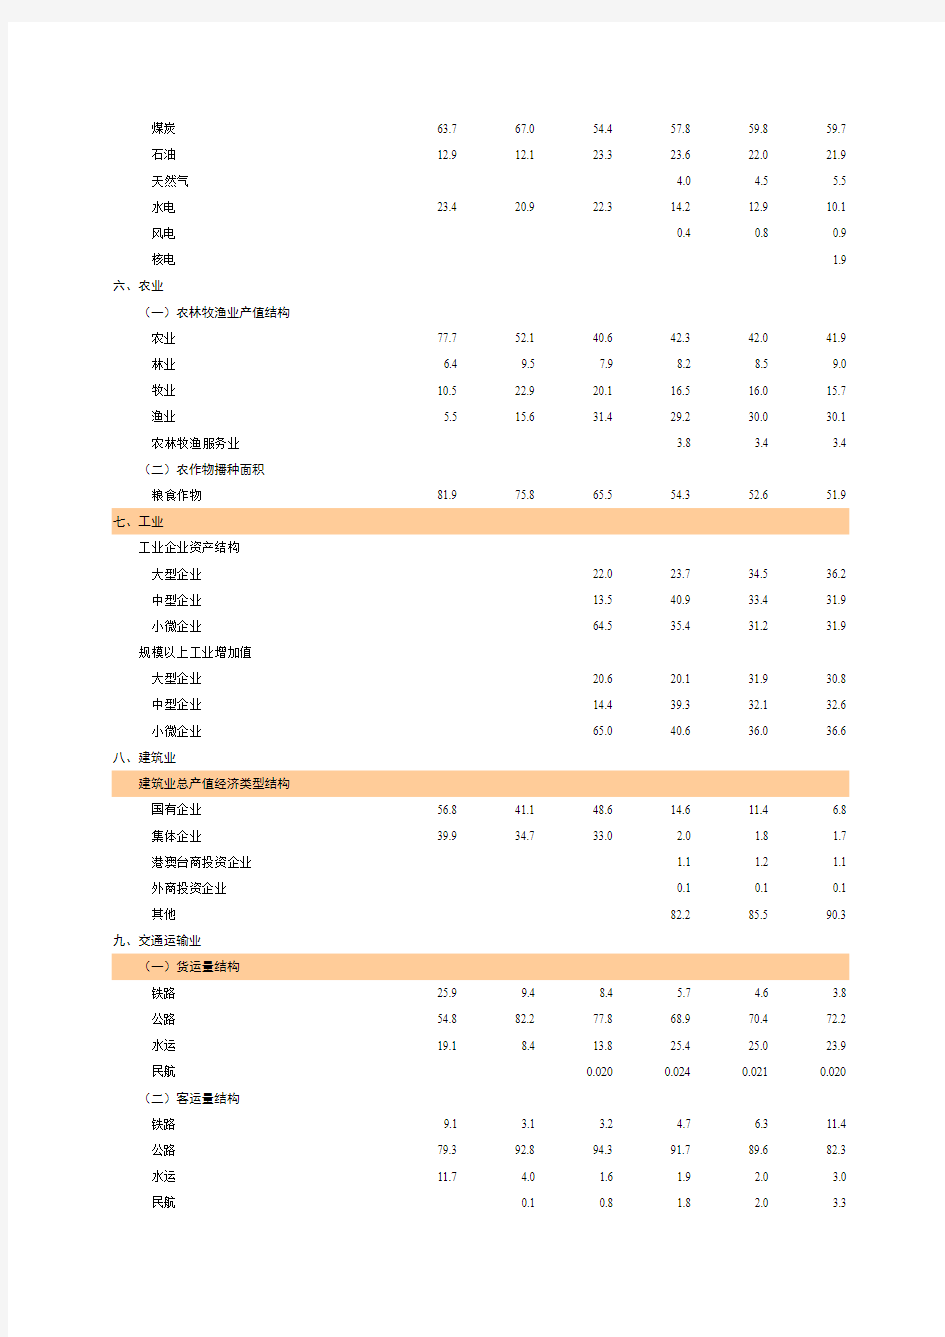 国民经济和社会发展结构指标 福建省统计年鉴2014